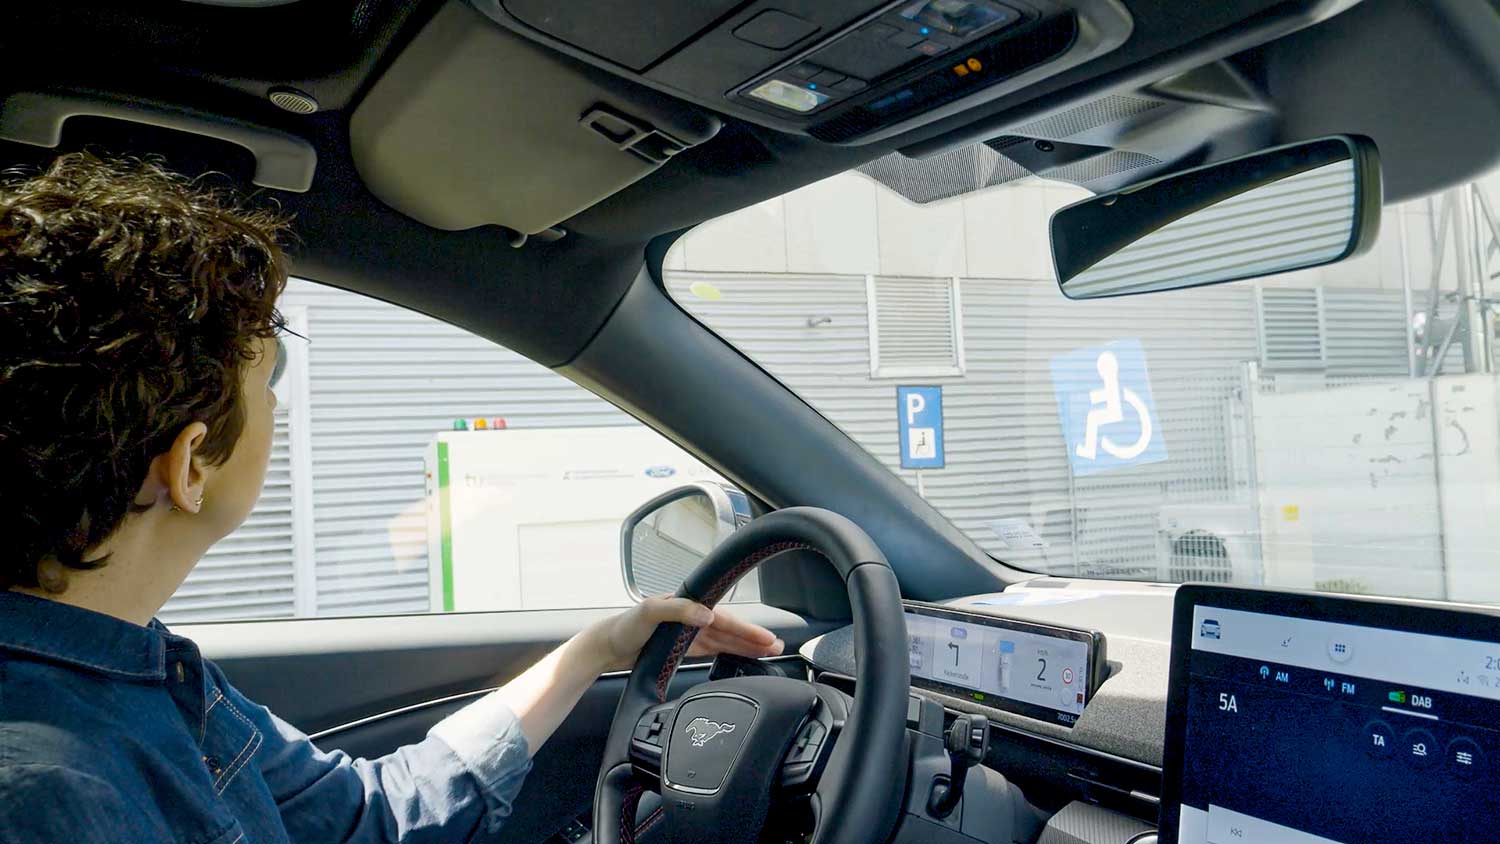 Ford sperimenta una stazione di ricarica robotizzata per agevolare i disabili